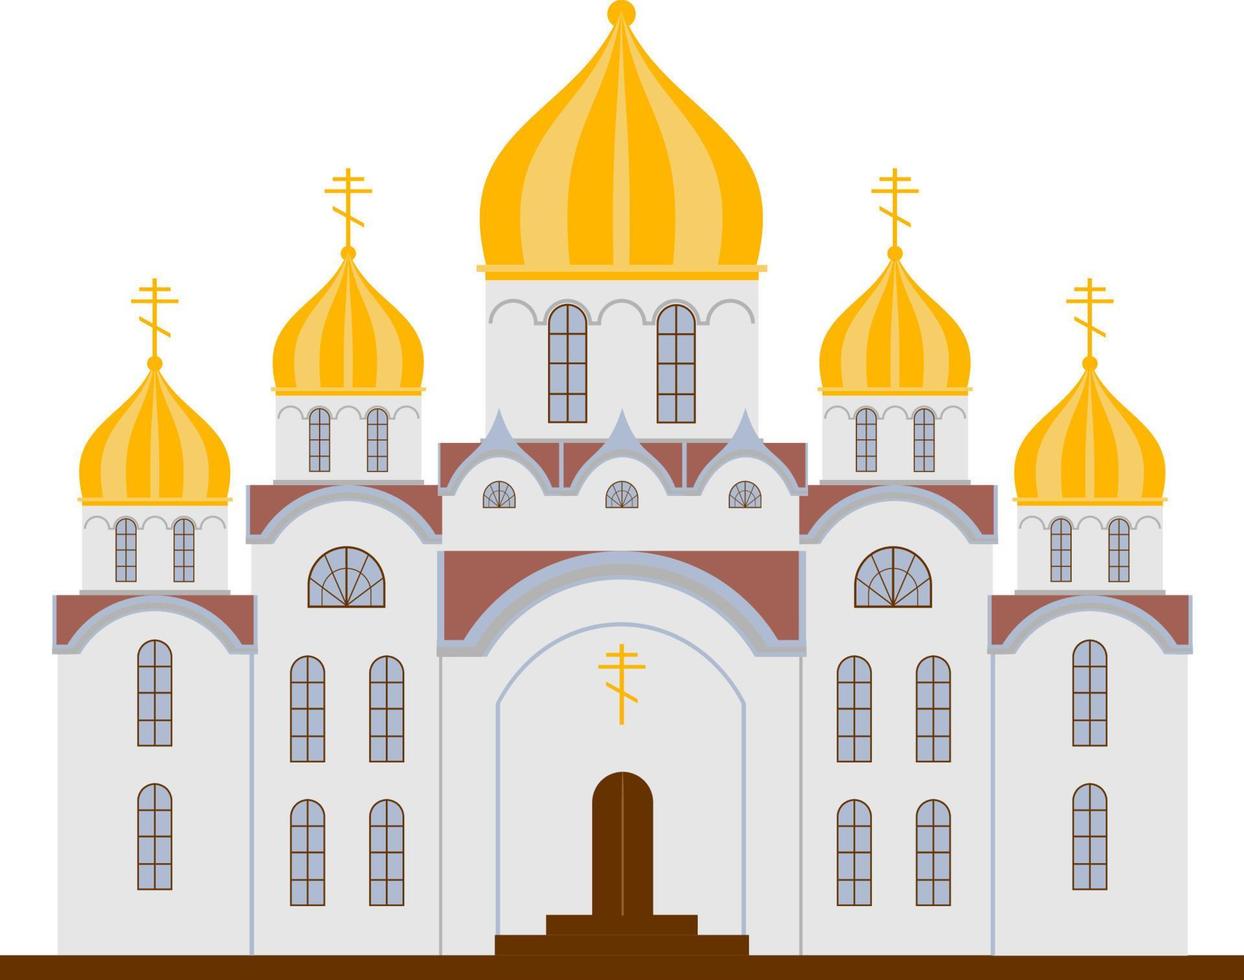 église chrétienne. église orthodoxe. chapelle de style dessin animé plat avec croix, chapelle, dômes vecteur